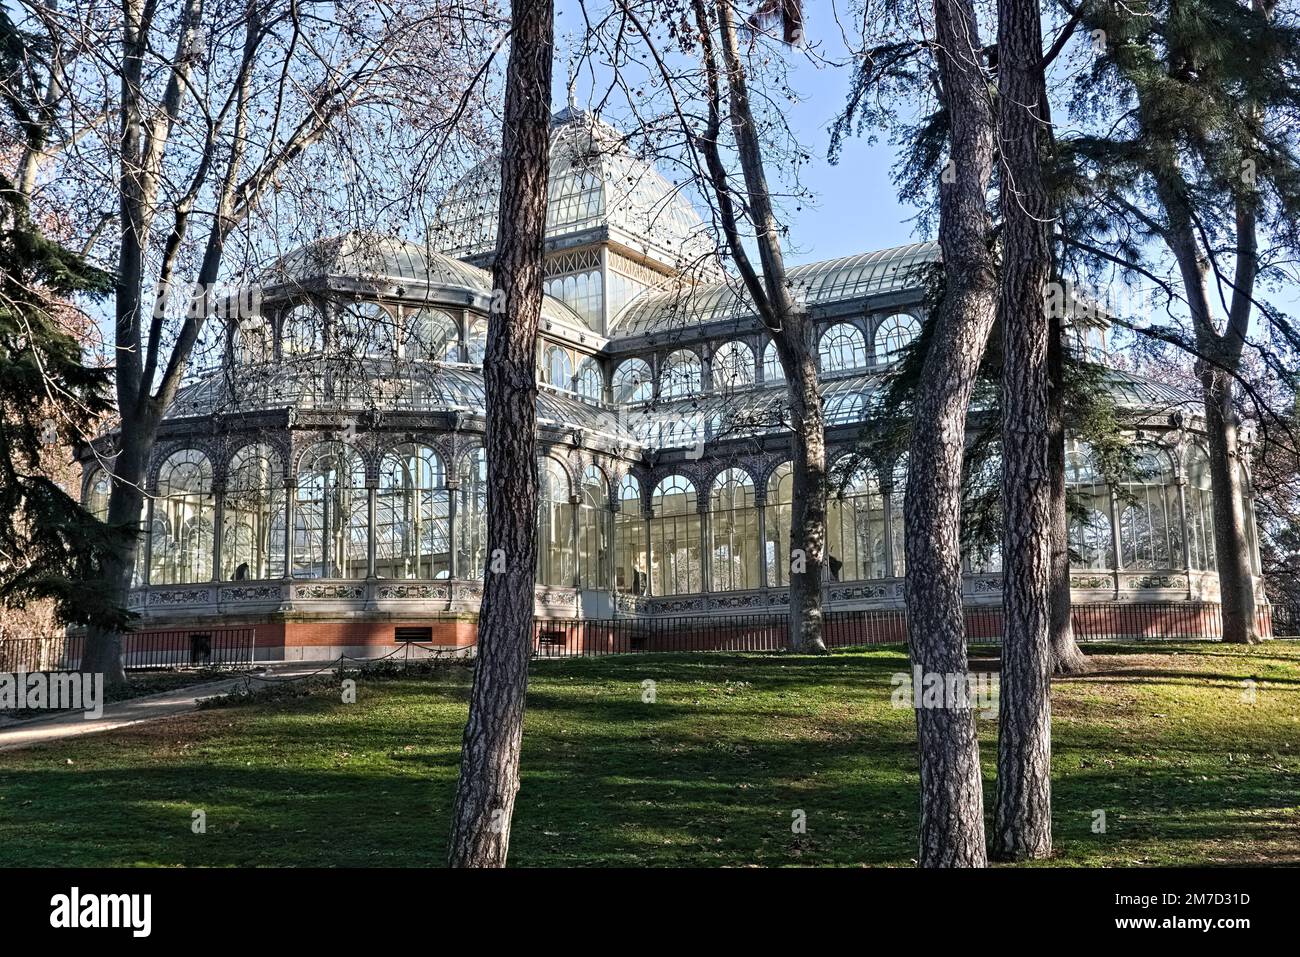 El Palacio de Cristal del Parque del Retiro en Madrid Stock Photo